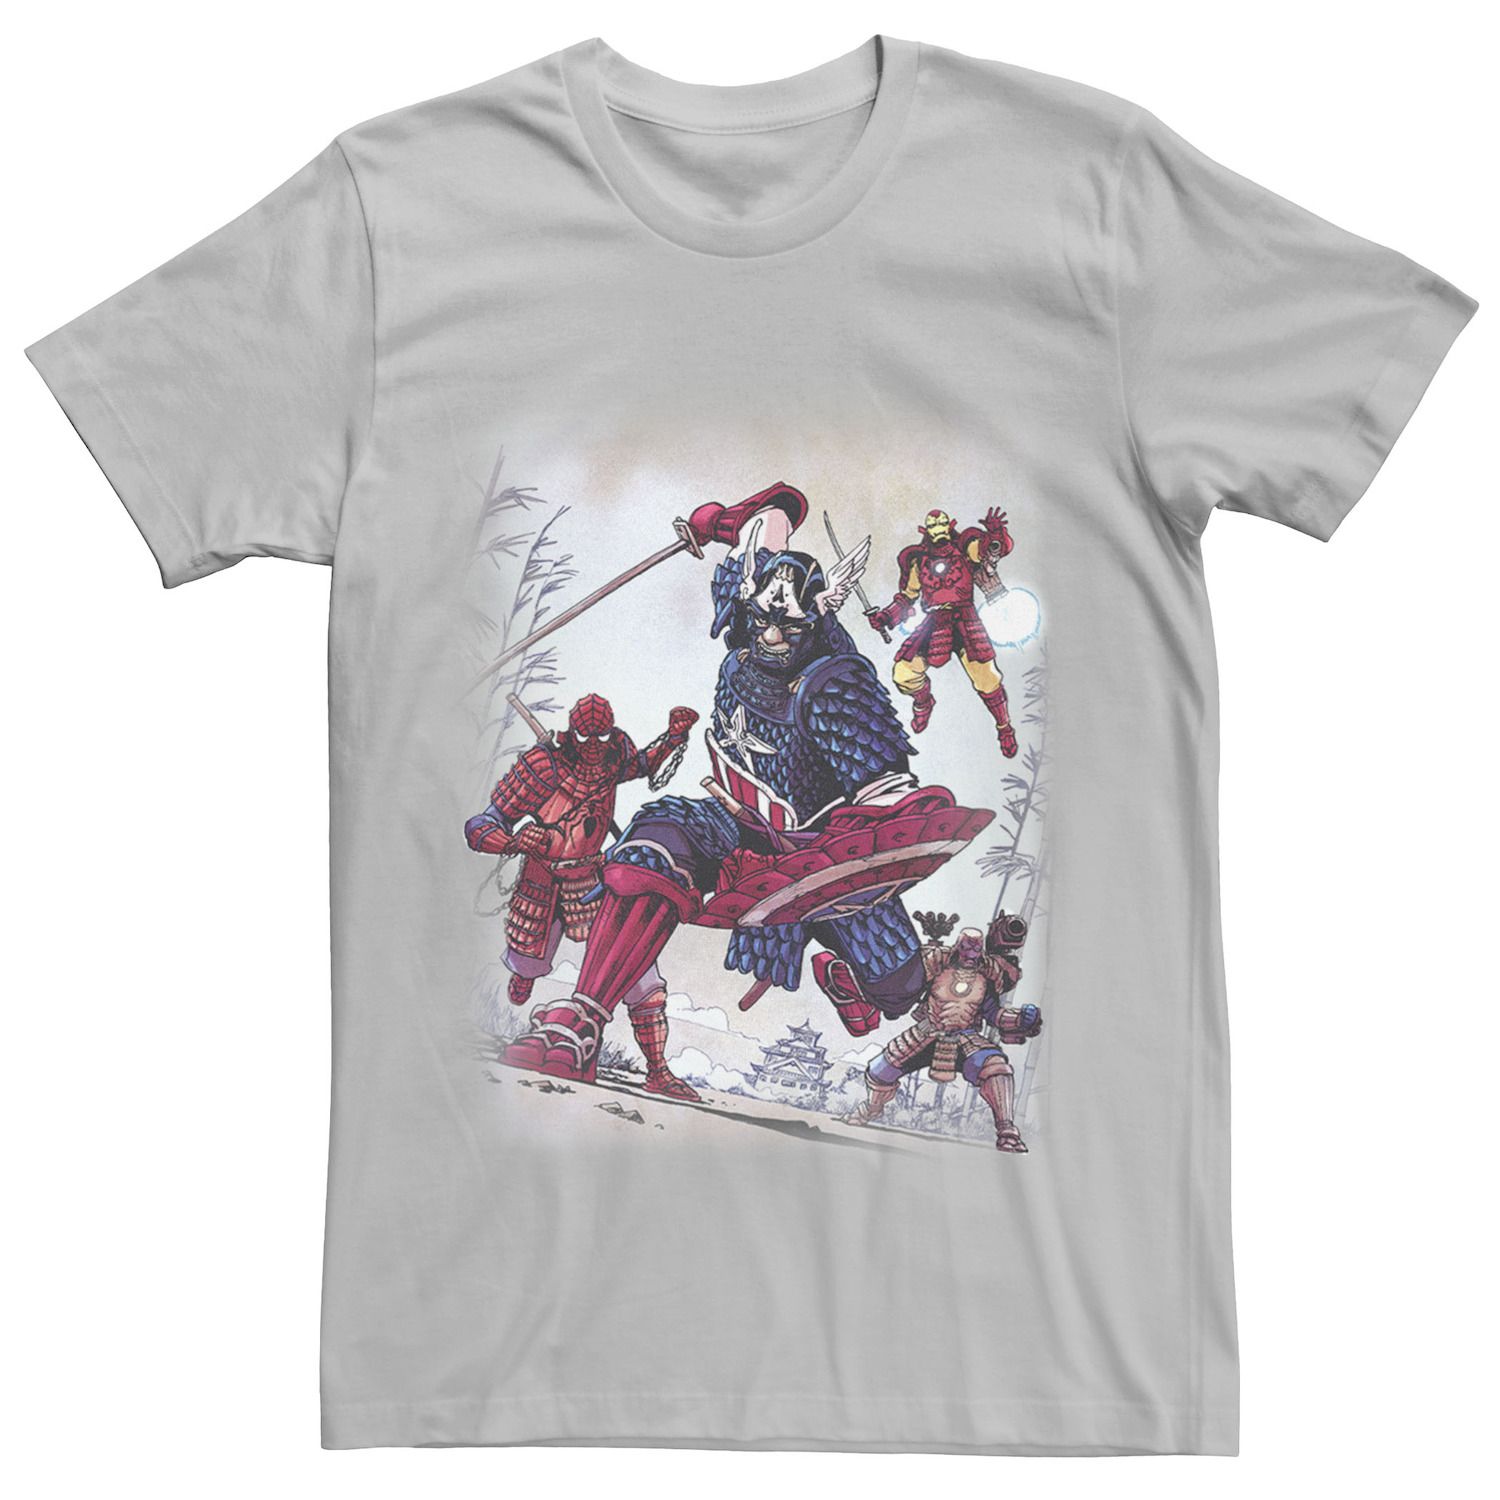 Мужская футболка Avengers Assemble Samurai Warriors Marvel